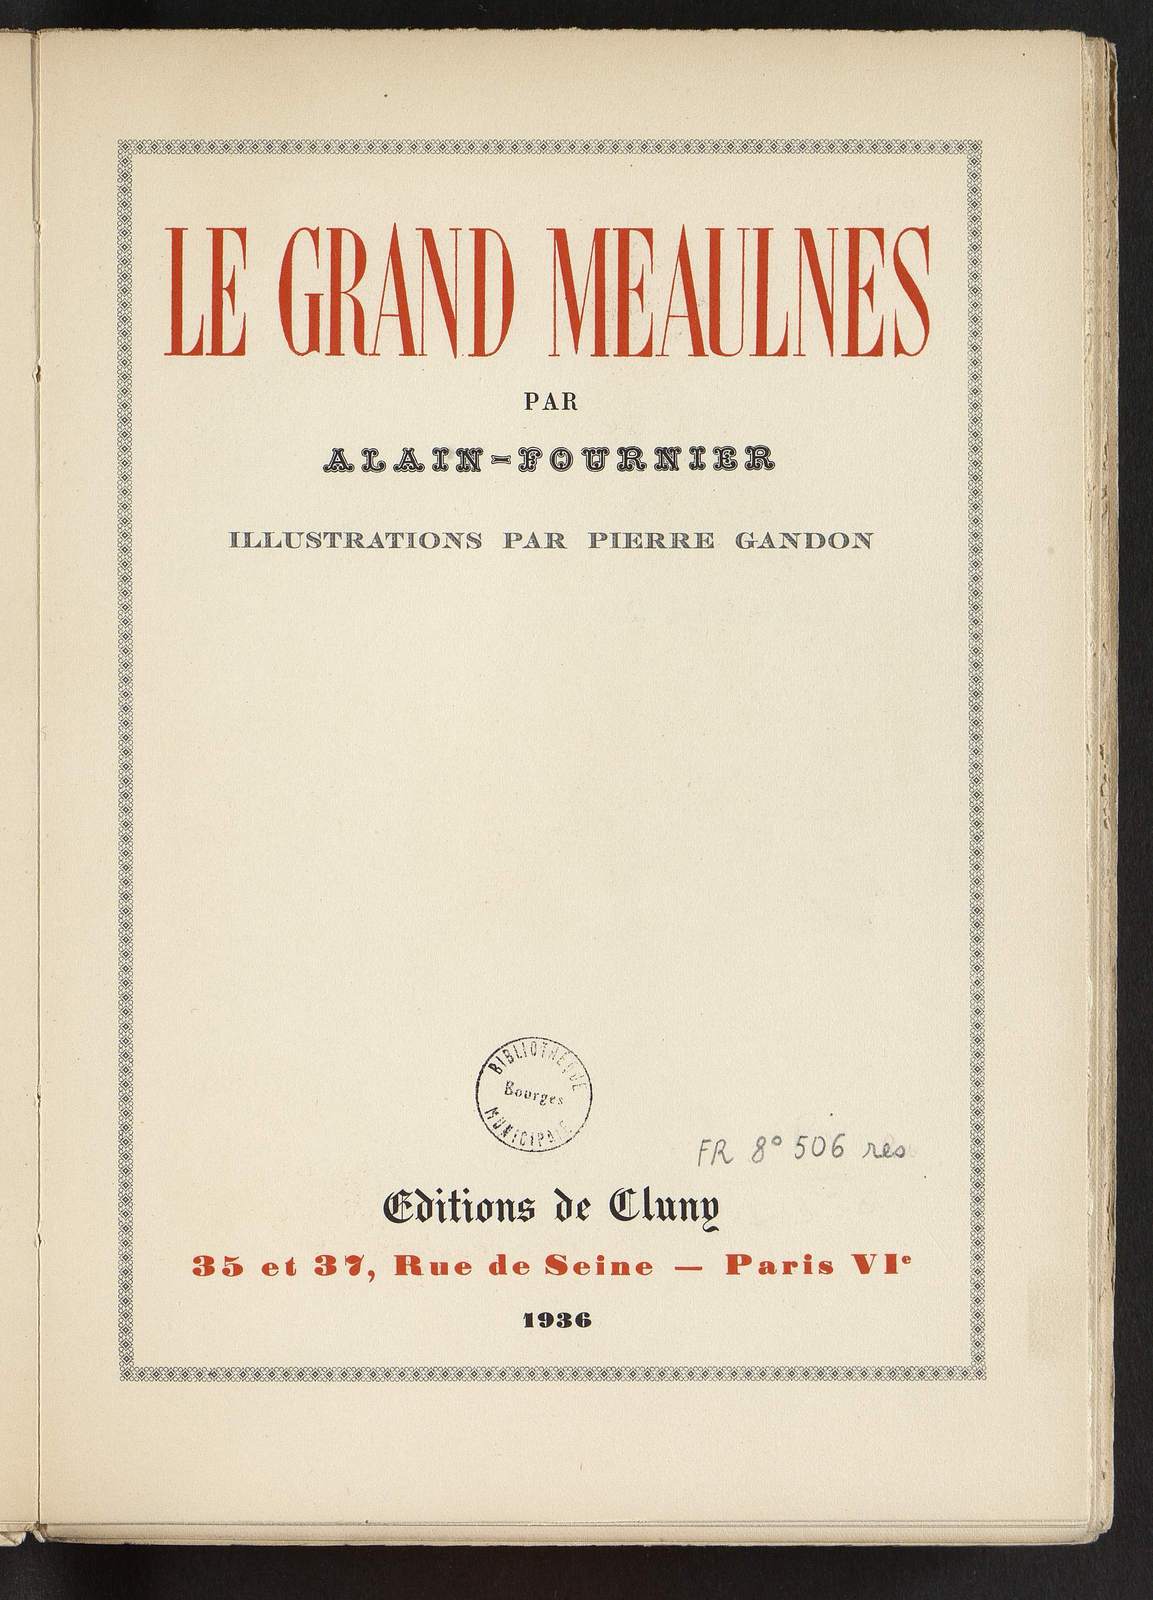 Le Grand Meaulnes, Les gens heureux, illustré par Pierre Gandon, Editions de Cluny, 1936